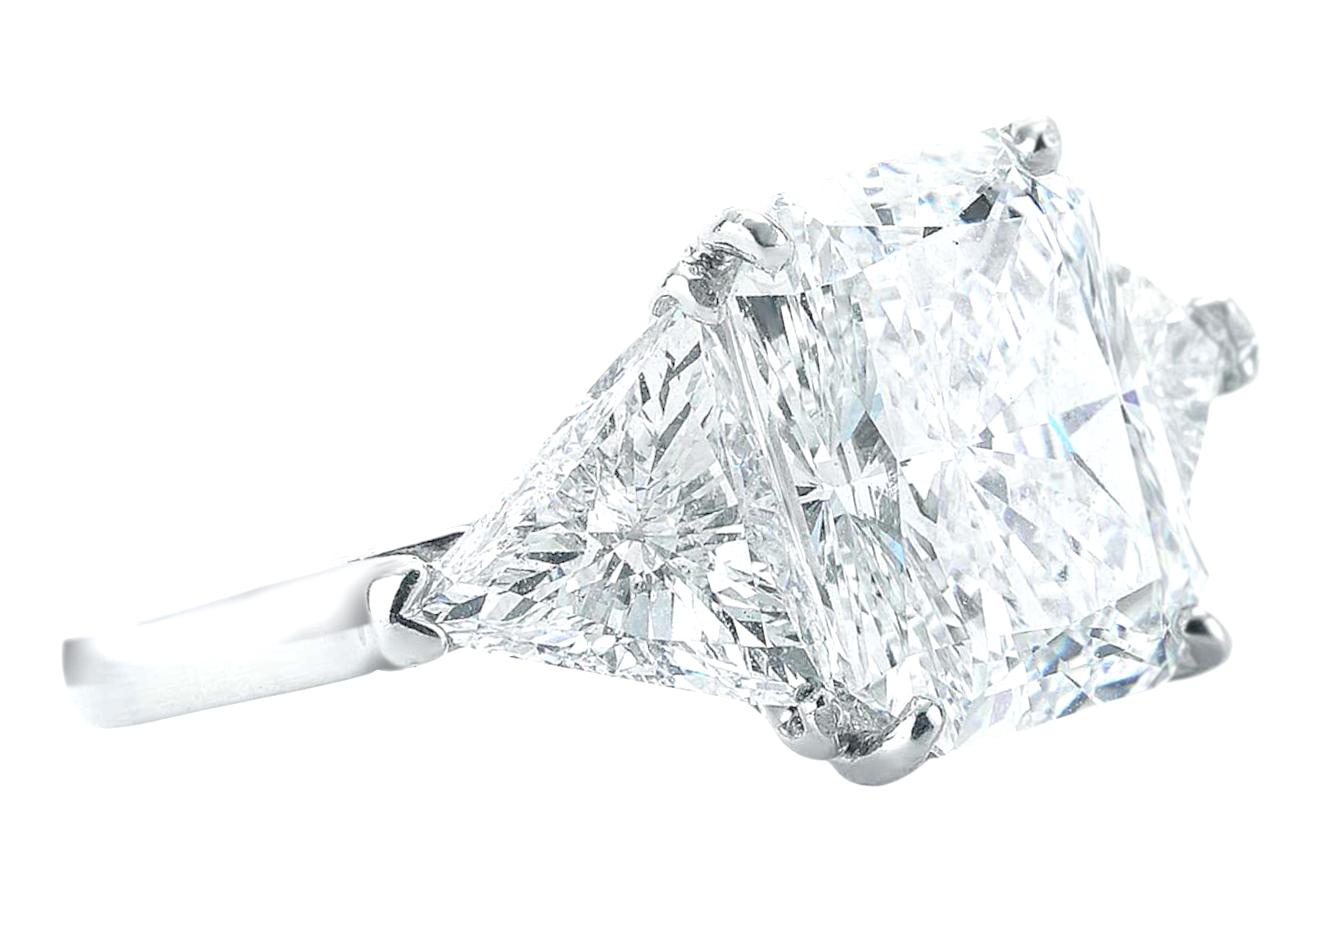 Exquise bague en diamant à trois pierres composée d'un diamant radiant de 4,02 carats certifié par le GIA et de deux diamants latéraux de taille trillion aux excellentes proportions.
Chaque diamant taille trillion pèse environ 1 carat.

Vous